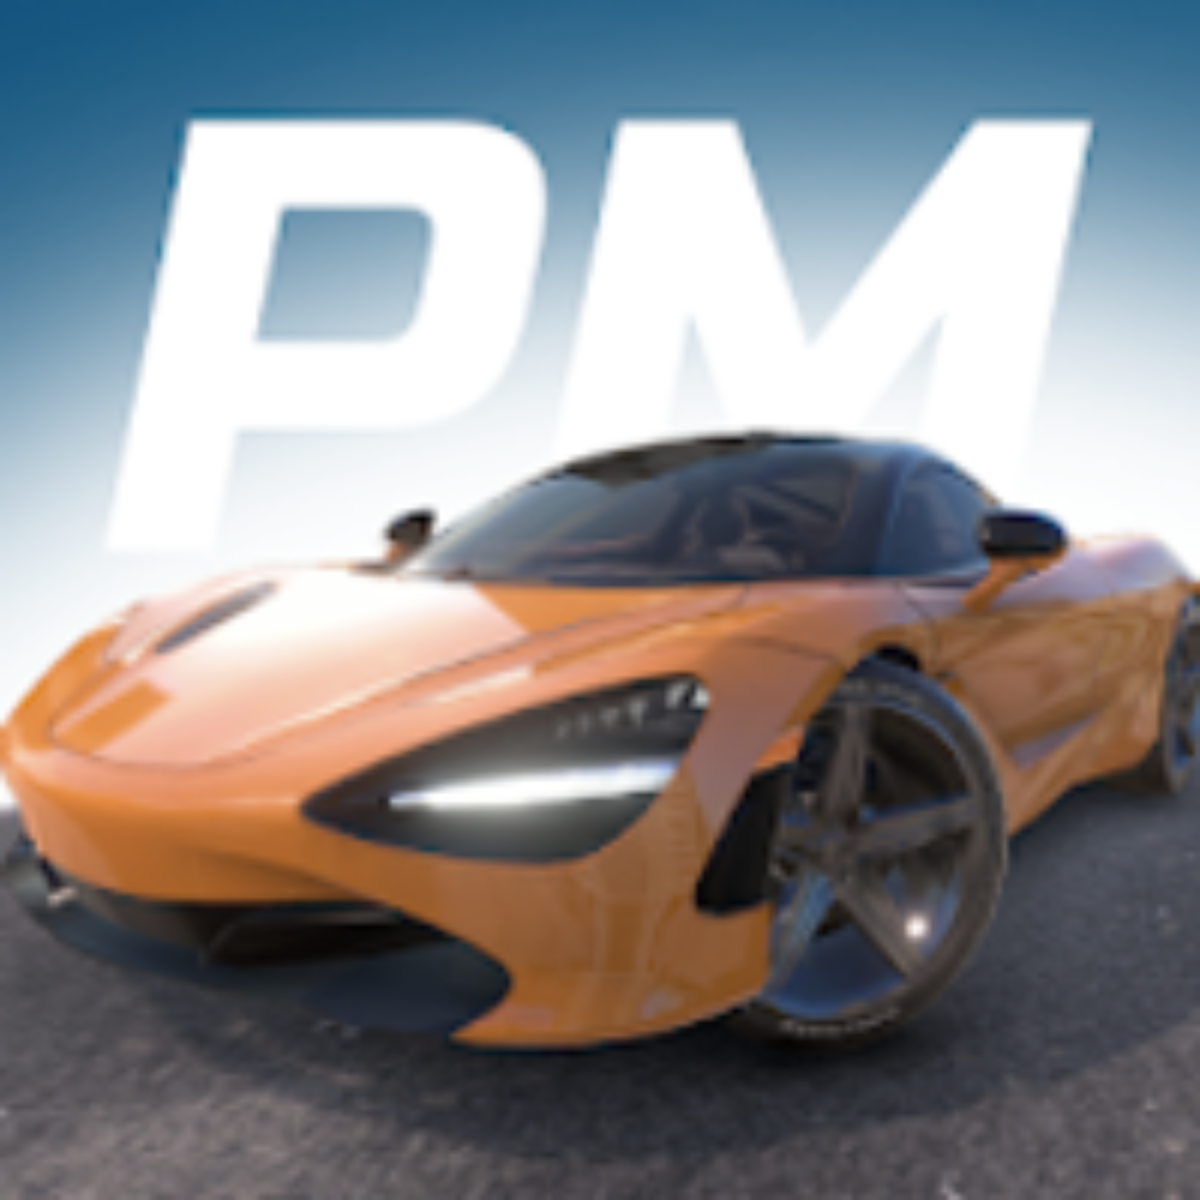 Car Parking Multiplayer v4.8.14.8 Apk Mod [Dinheiro Infinito]